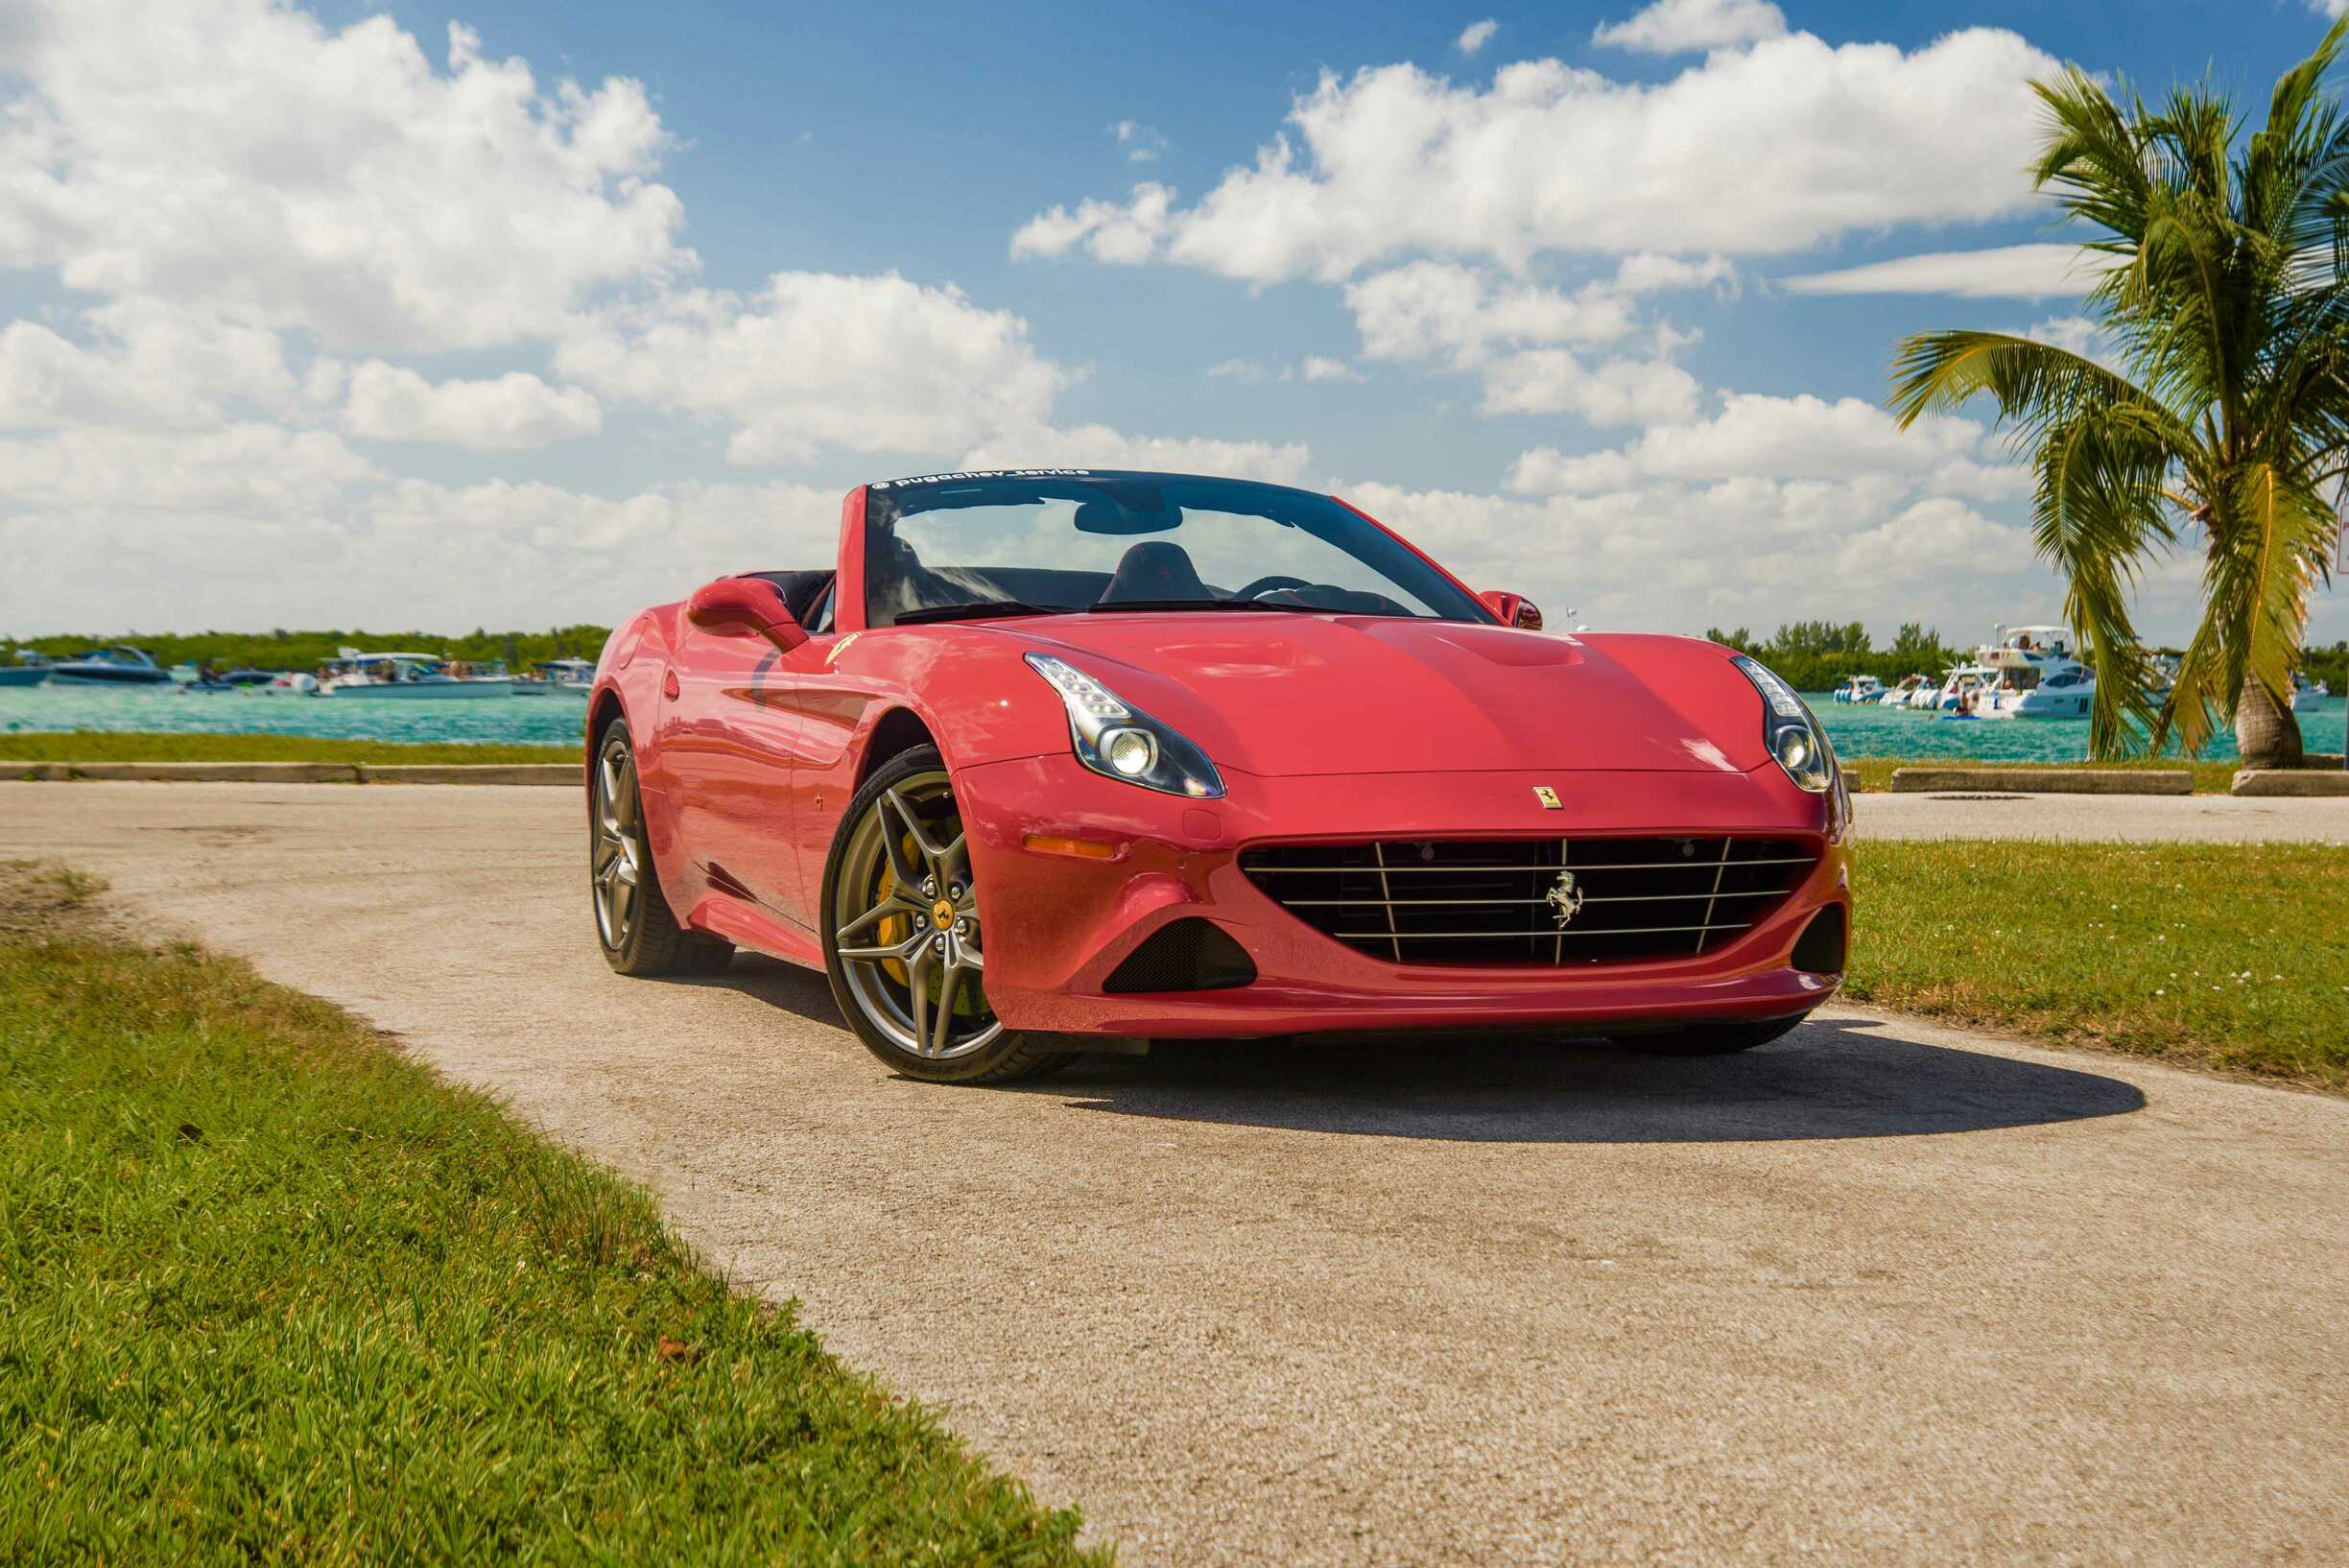 Luxury Sports Car Rental Miami - Luxury & Exotic Car Rentalin Miami, Florida